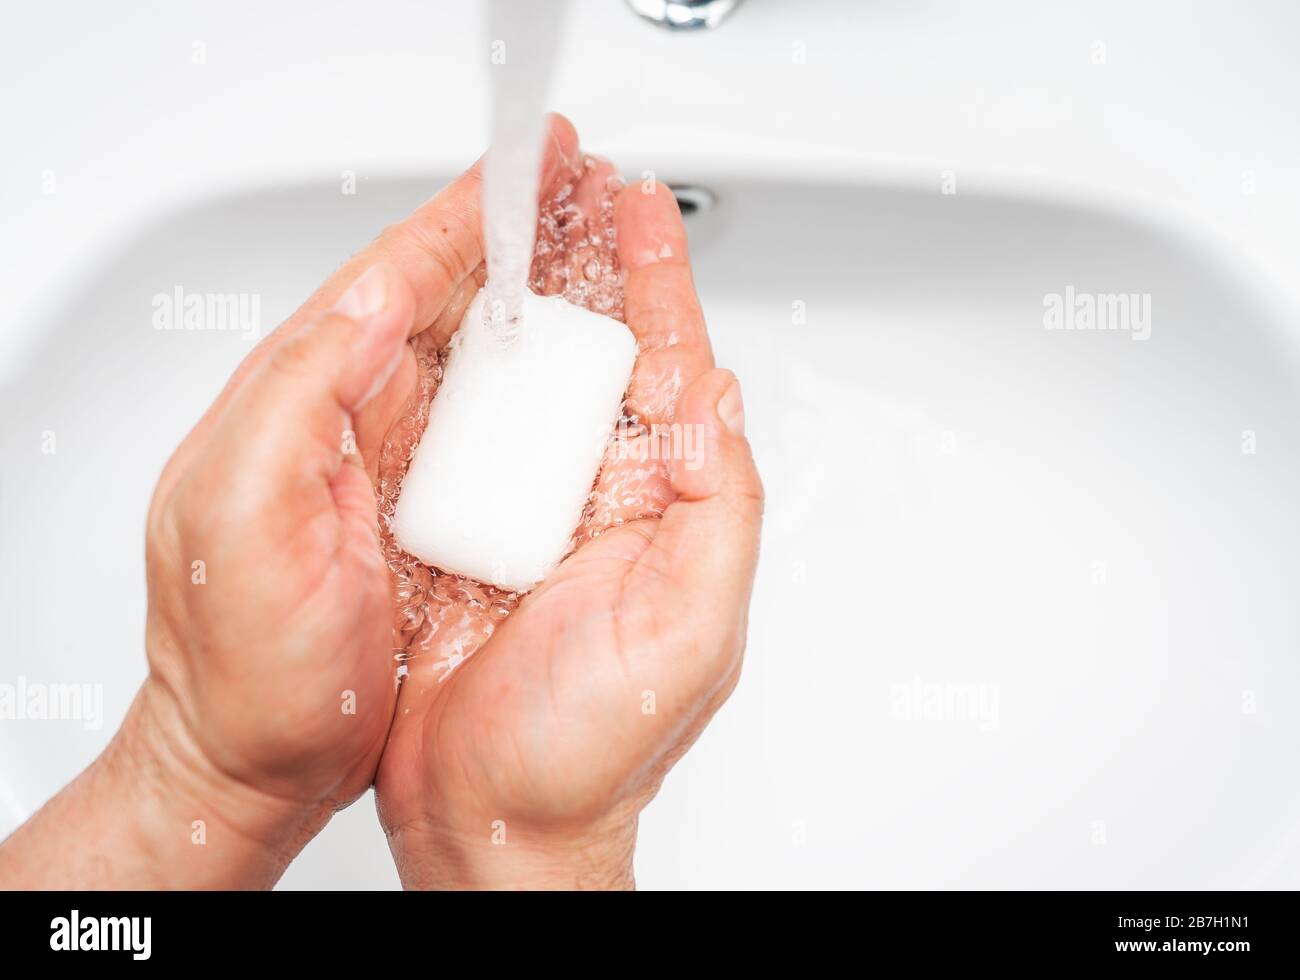 Igiene personale, pulizia delle mani con sapone spesso sul rubinetto per proteggere dal virus Foto Stock